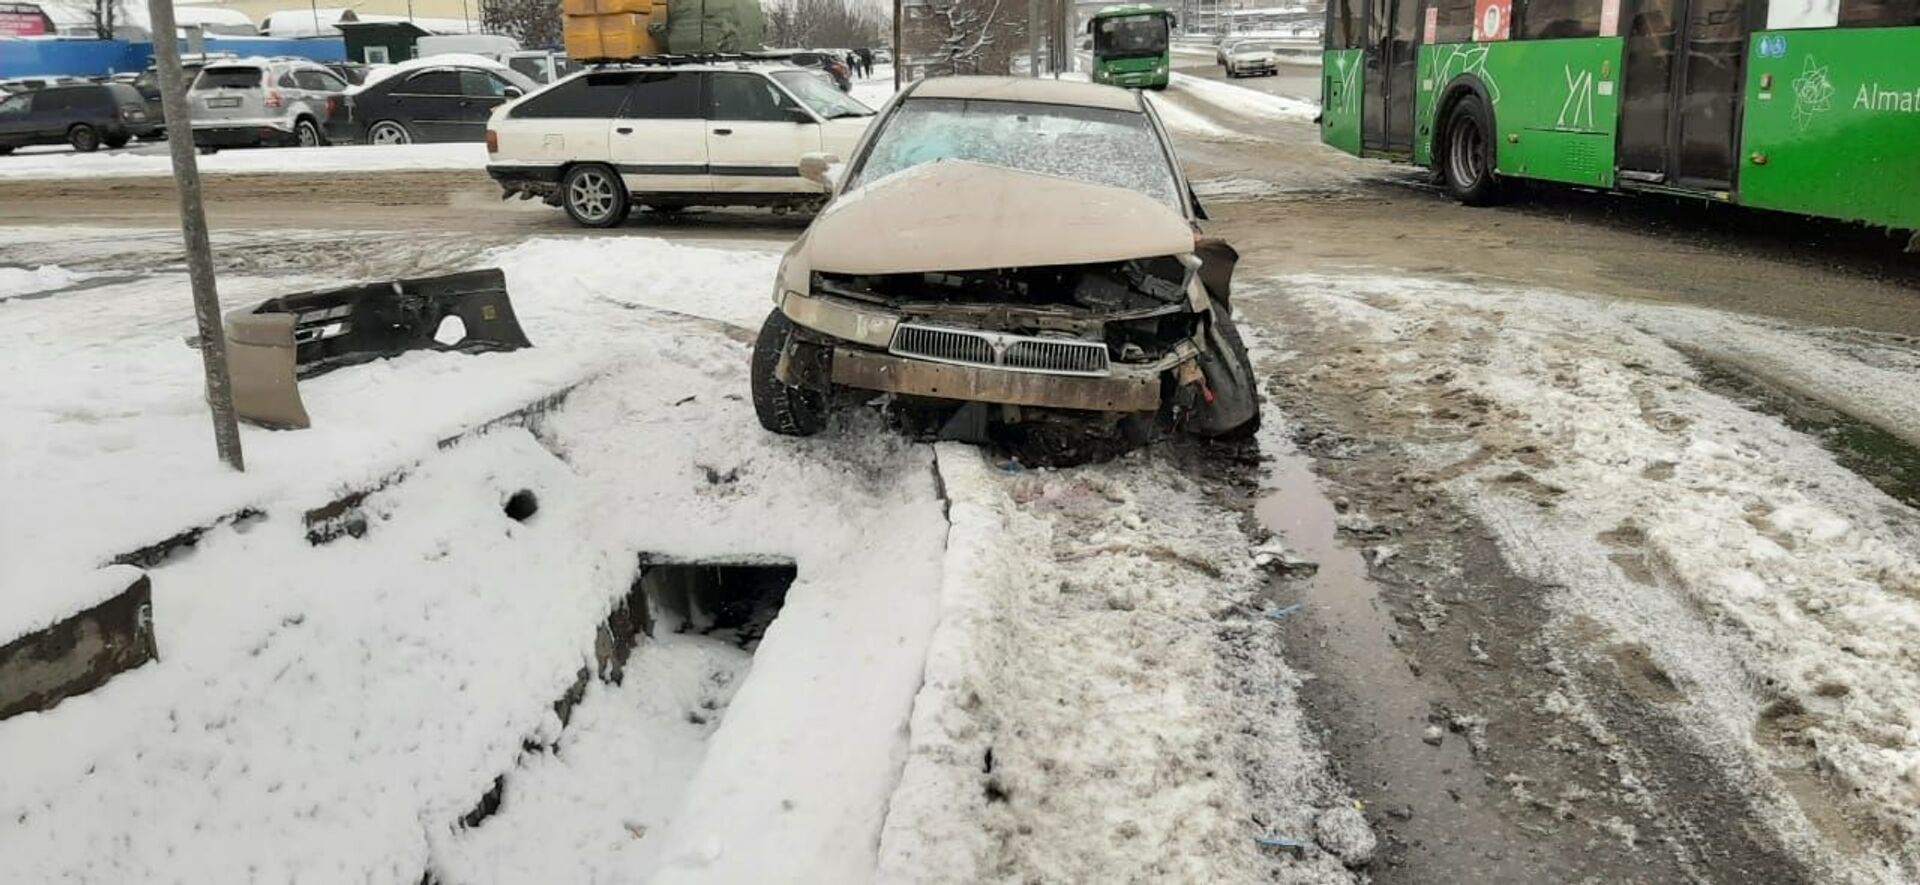 Шестеро человек пострадали в двух дорожных авариях в Алматы – фото - Sputnik Казахстан, 1920, 25.02.2021